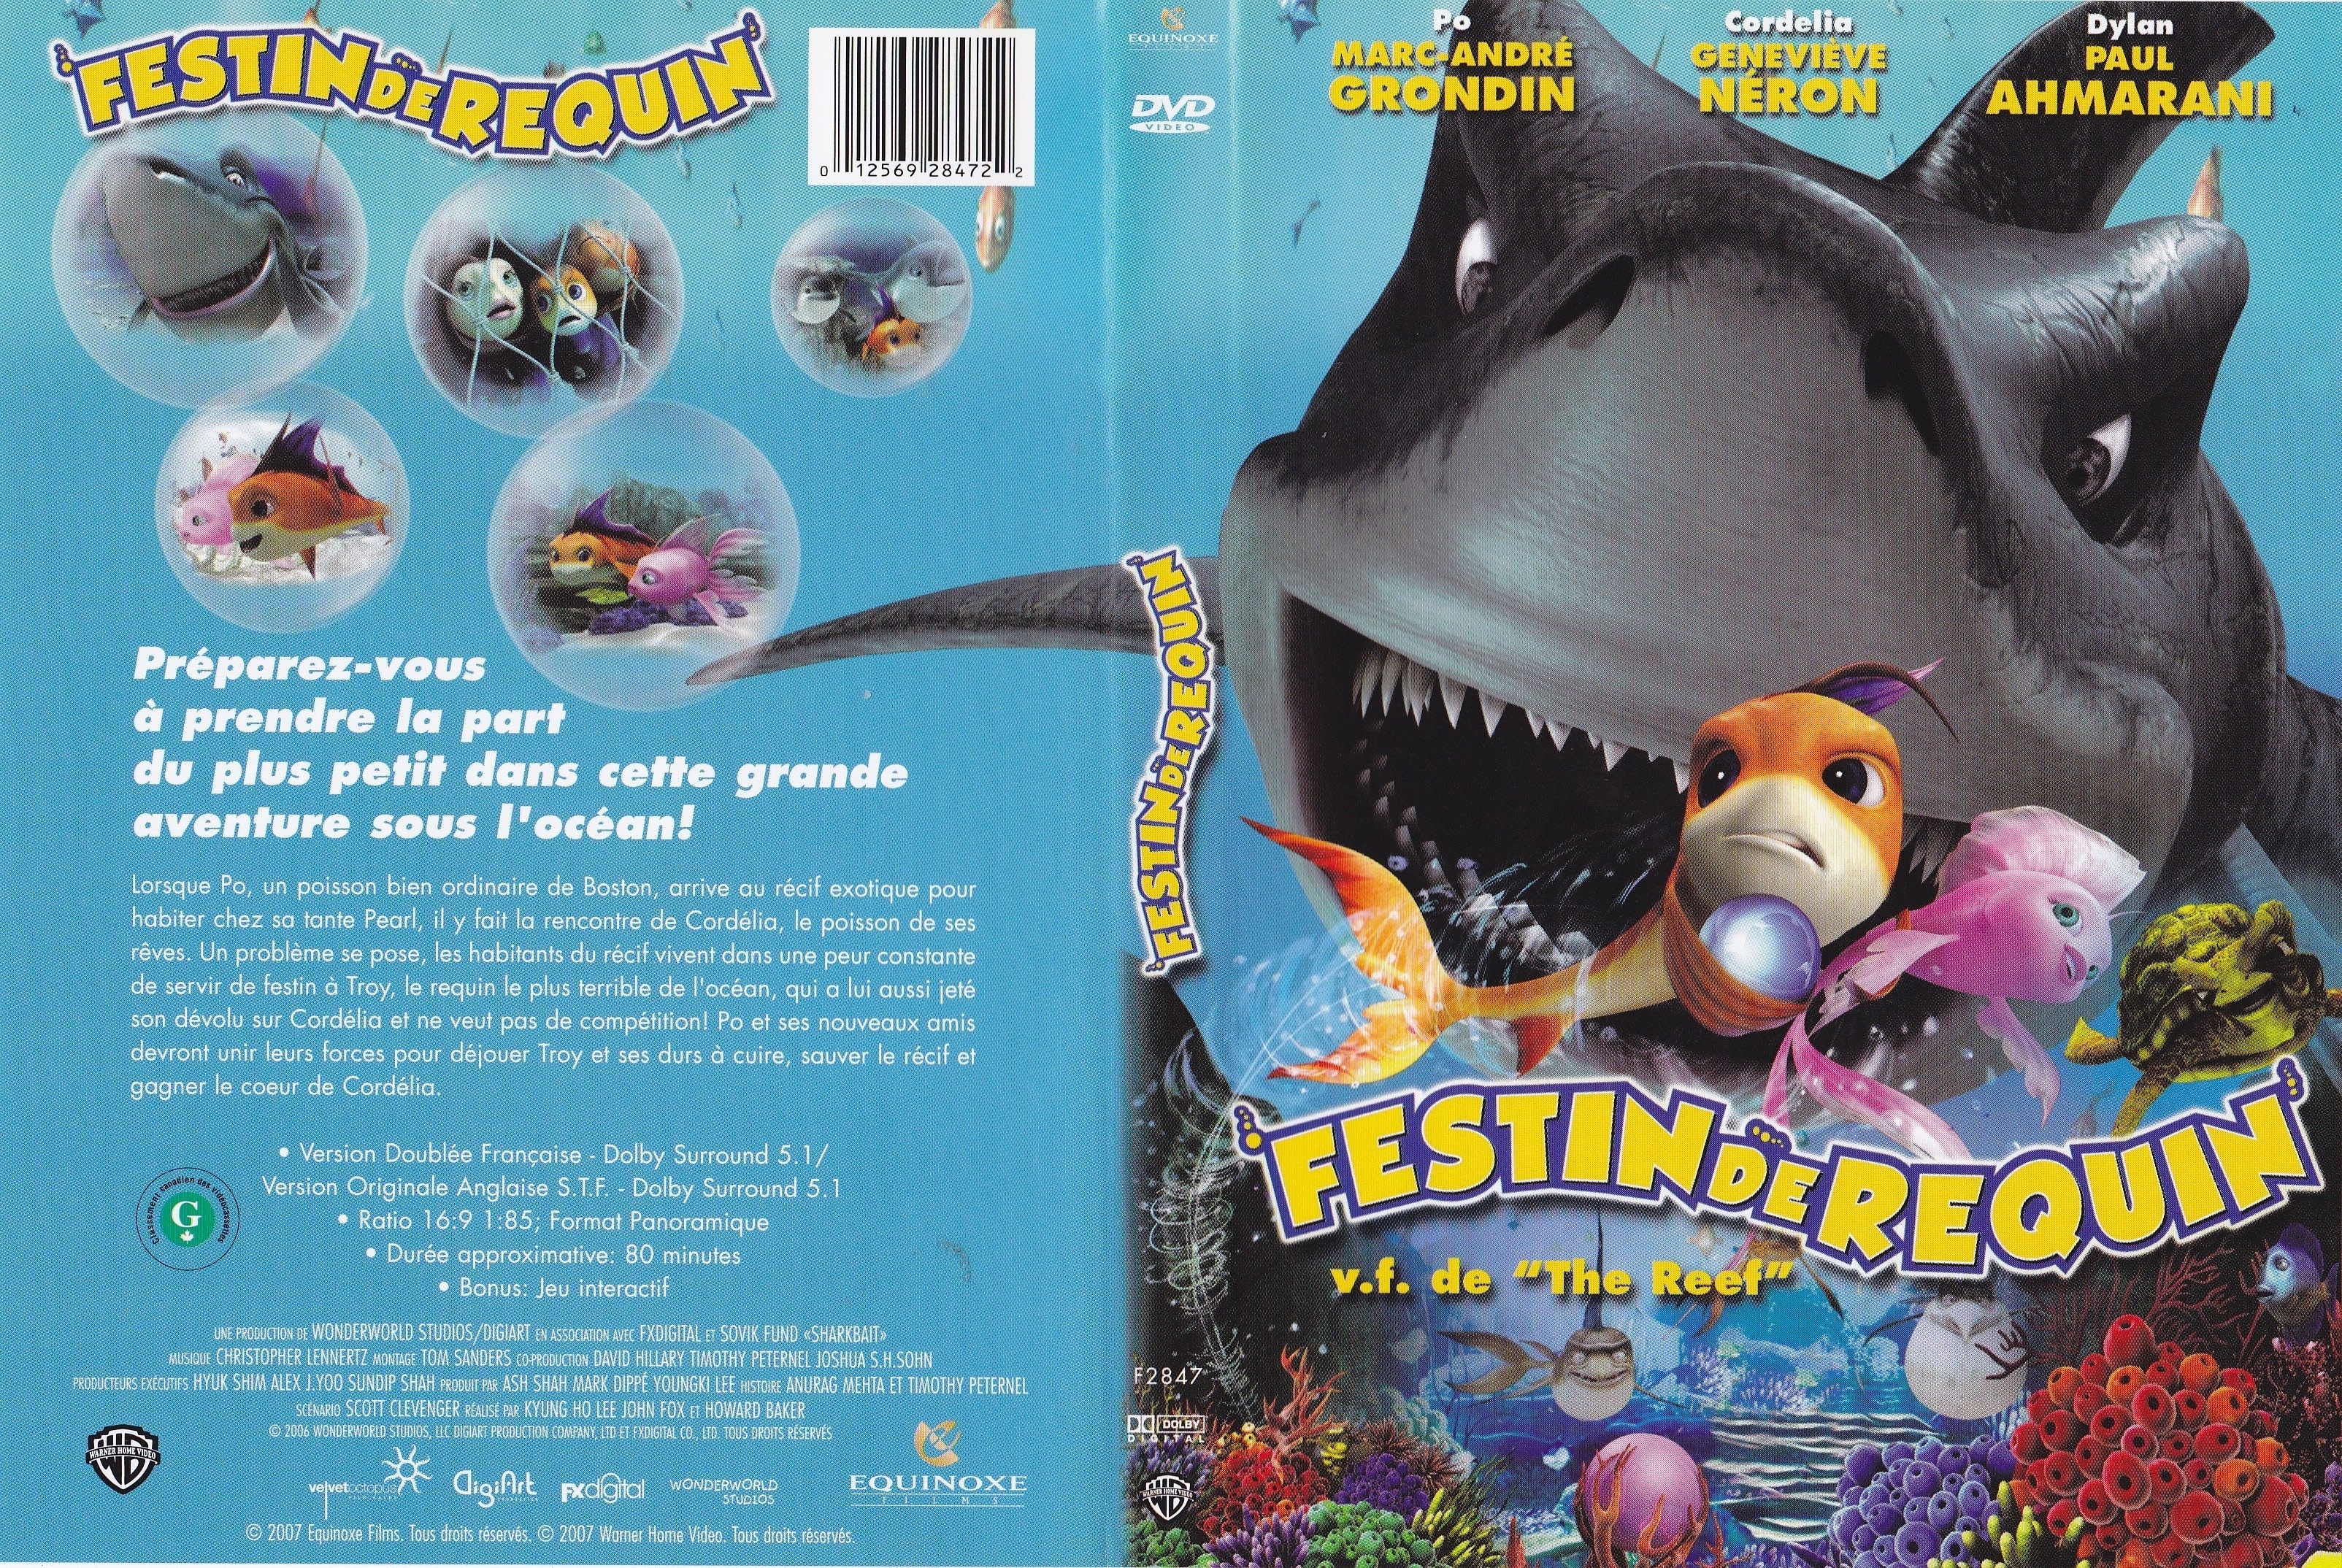 Jaquette DVD Festin de requin (Canadienne)